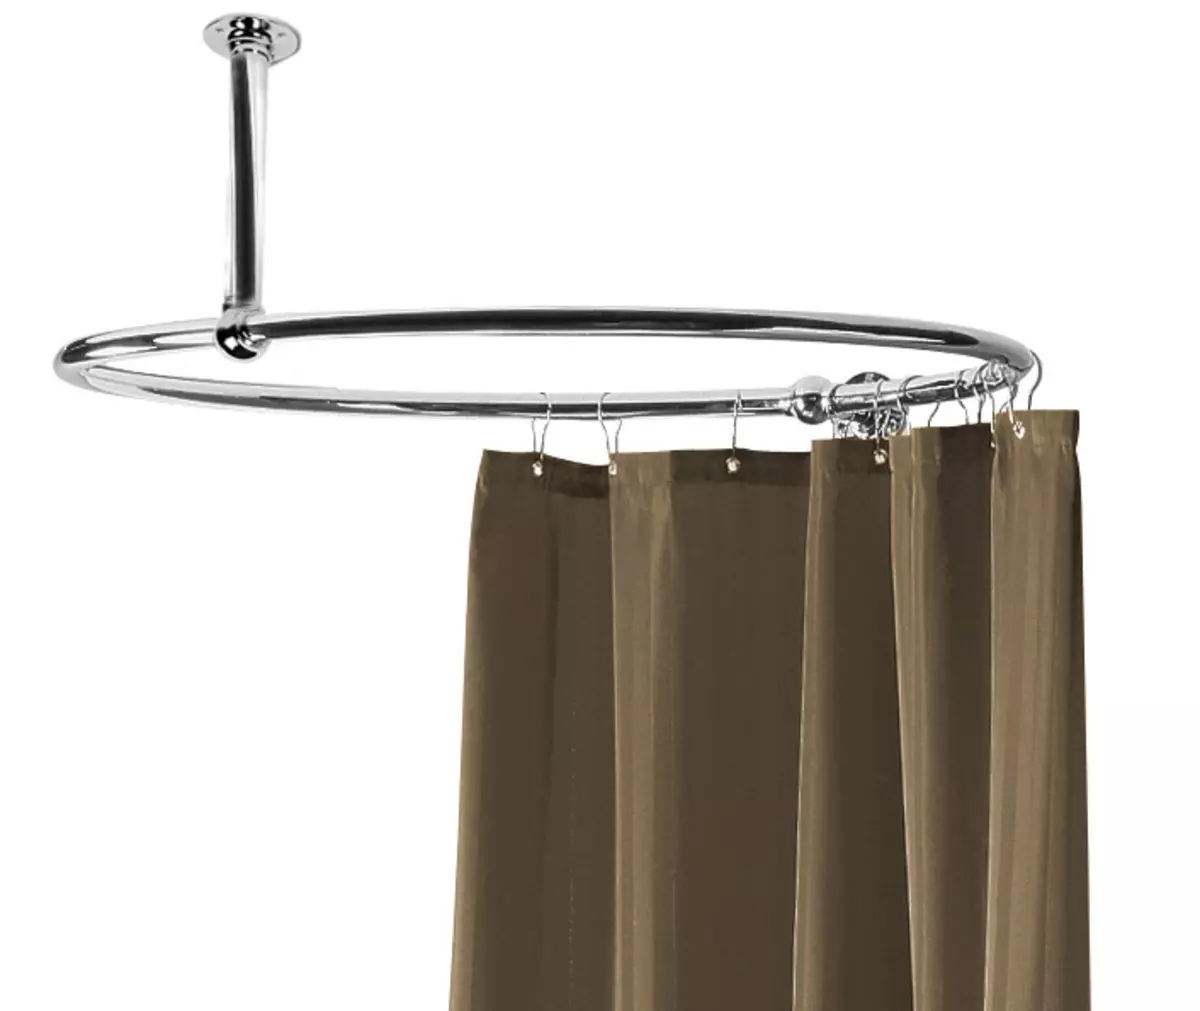 Rod per a cortines al bany: característiques d'elecció i instal·lació